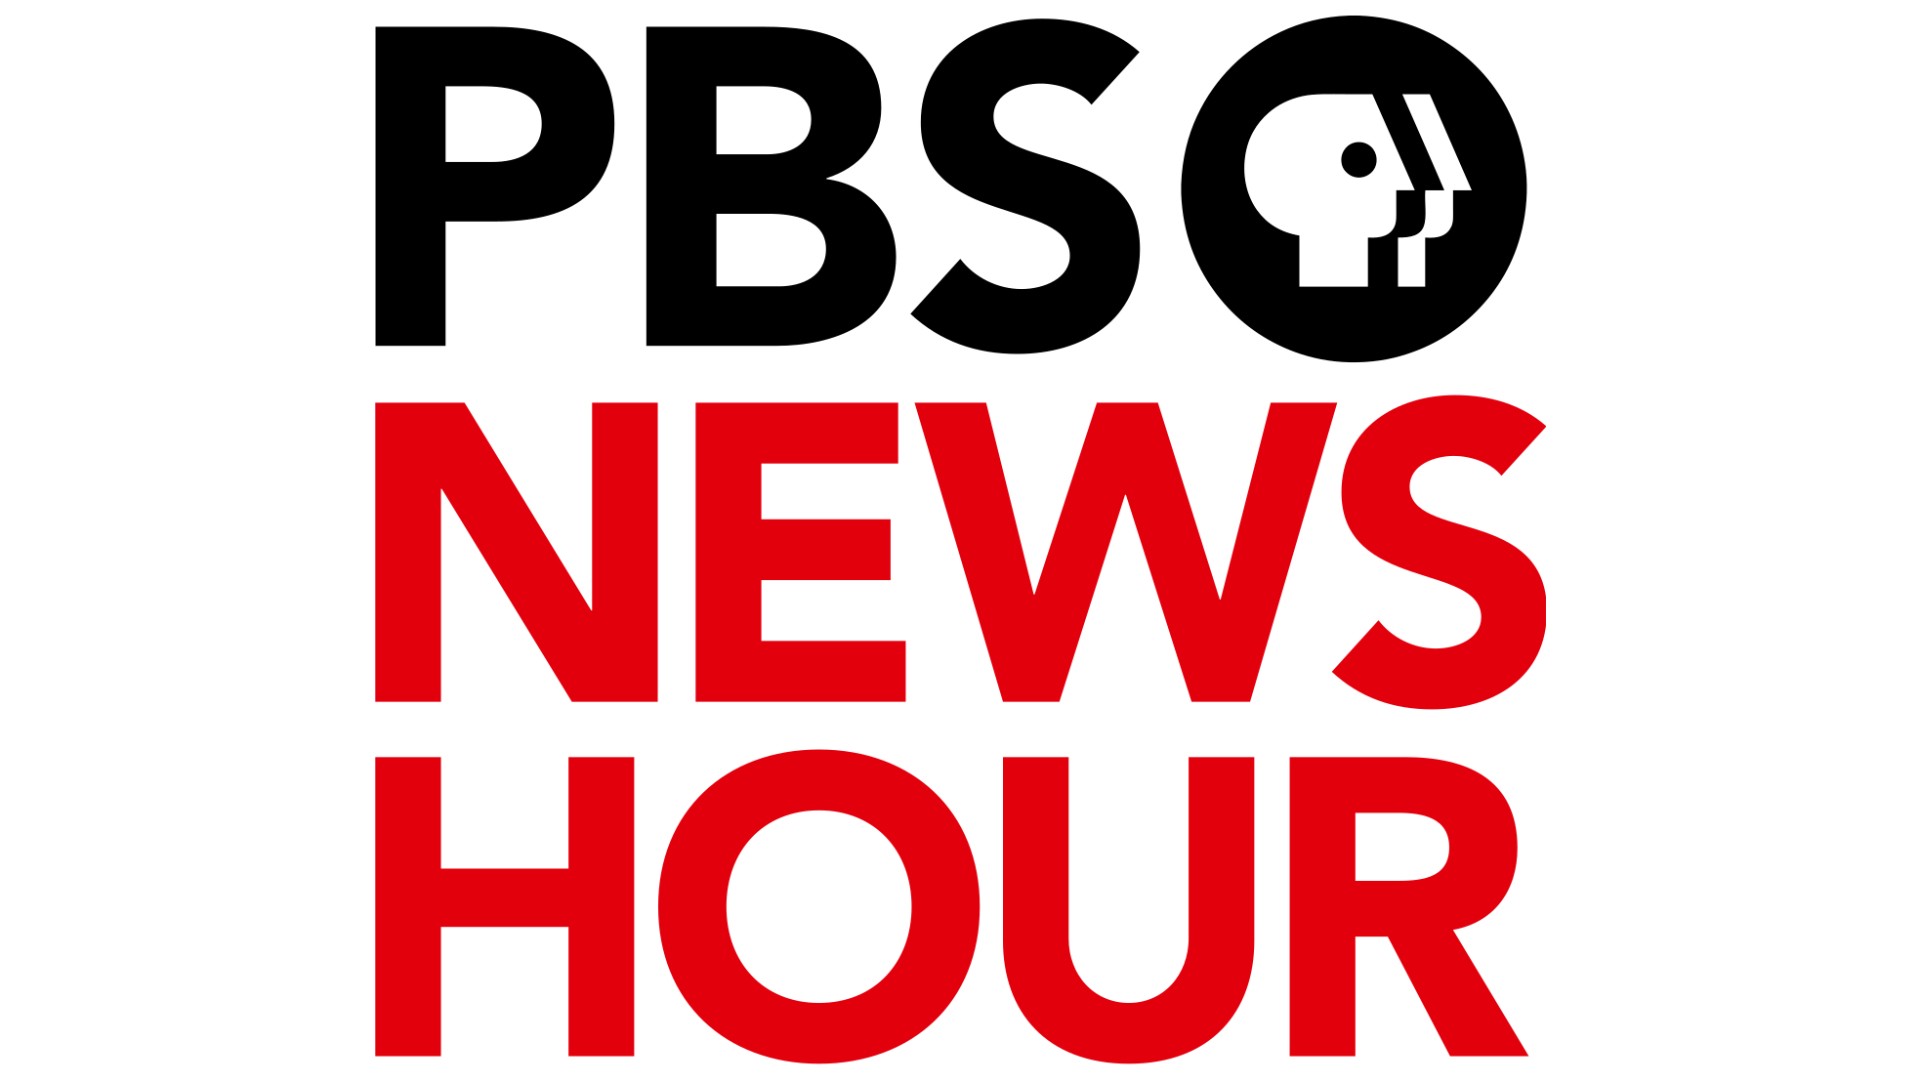 pbs news hour logo